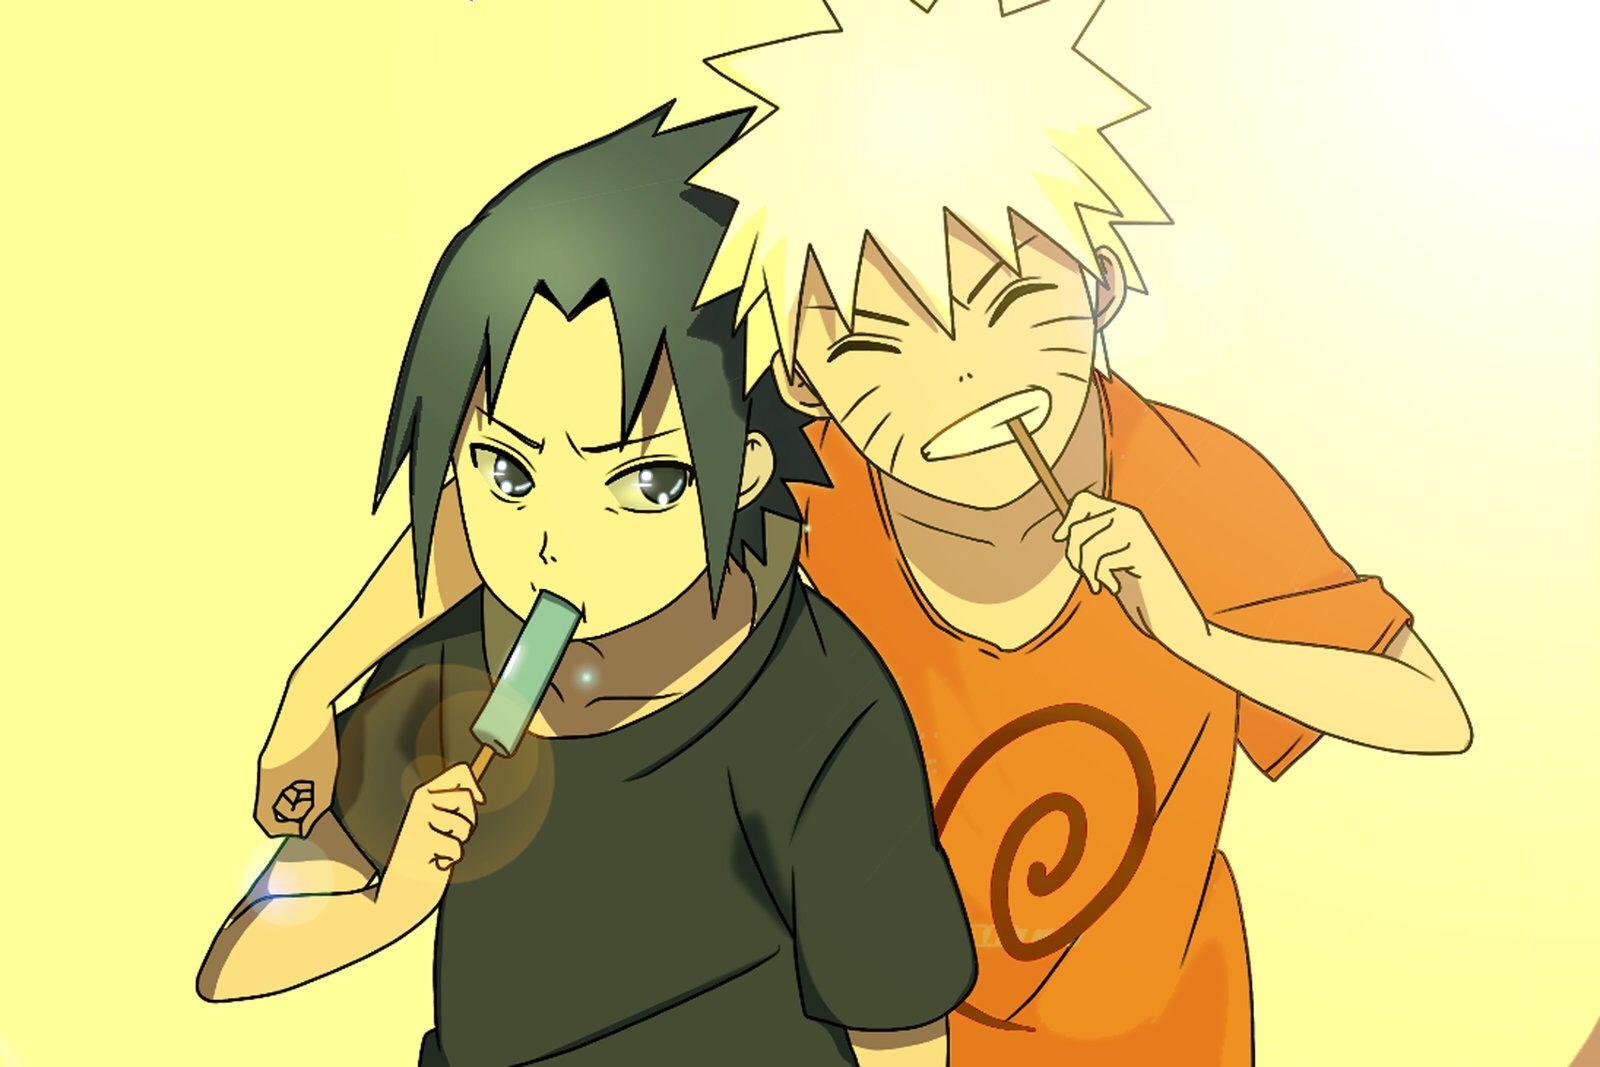 Little Sasuke and Naruto #naruto. Sasuke, Naruto, Naruto et sasuke